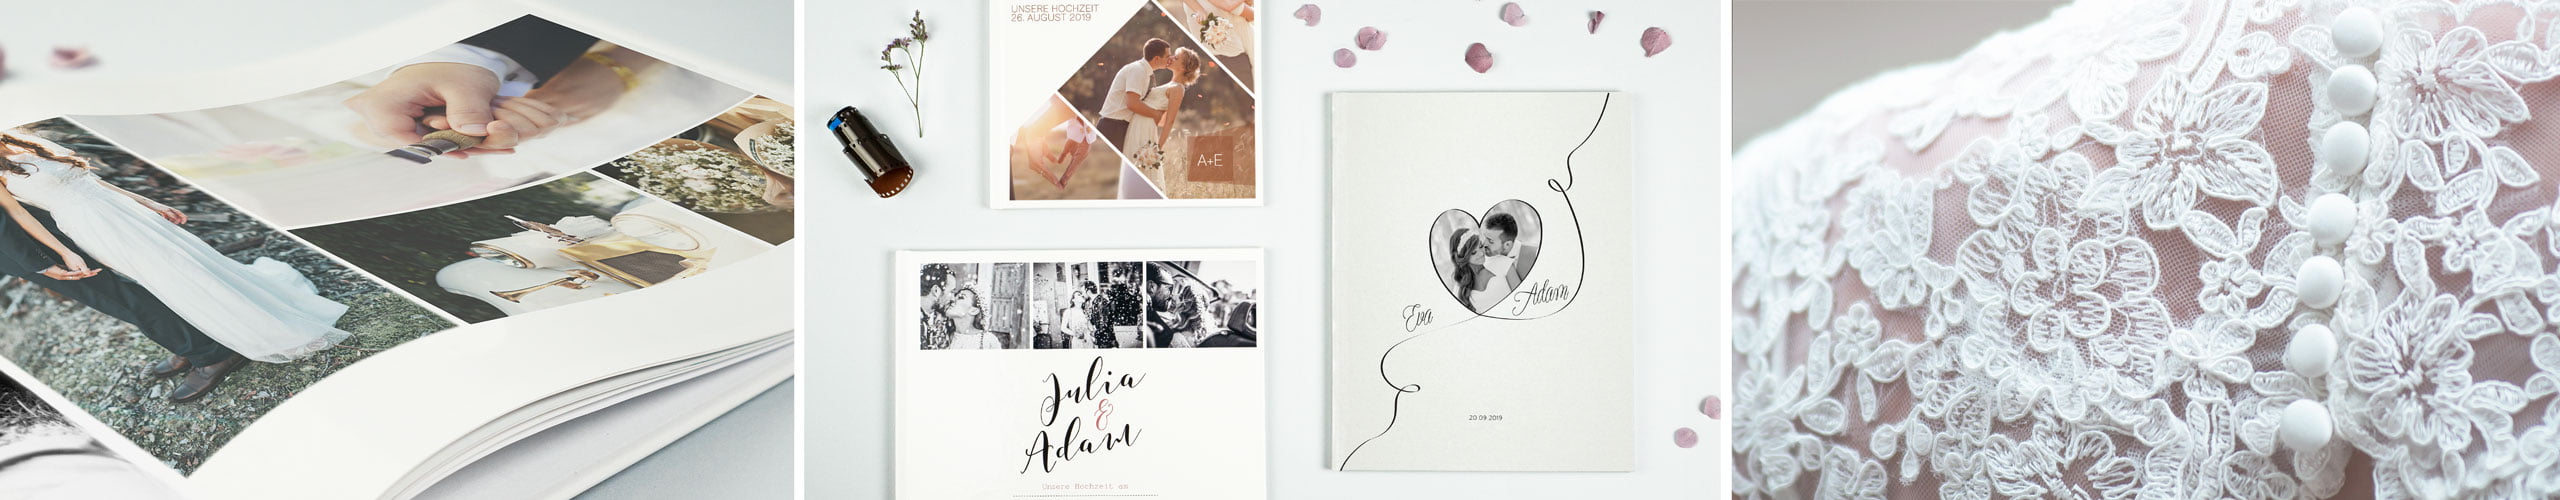 Fotobücher zur Hochzeit mit verschiedenen Formaten und Bildern